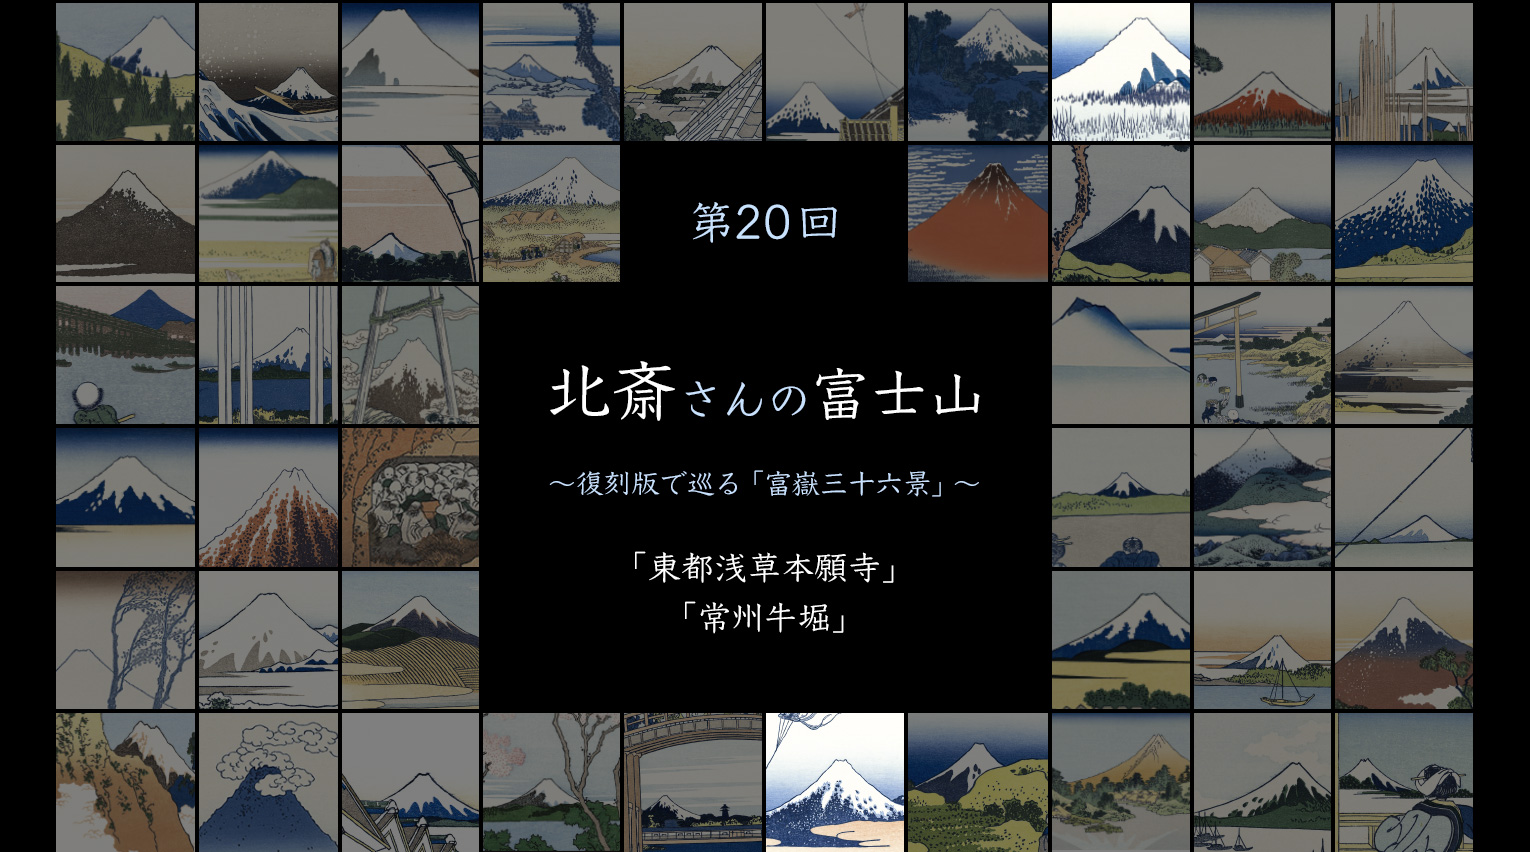 北斎さんの富士山 〜復刻版で見る「富嶽三十六景」〜 (20)【PR】